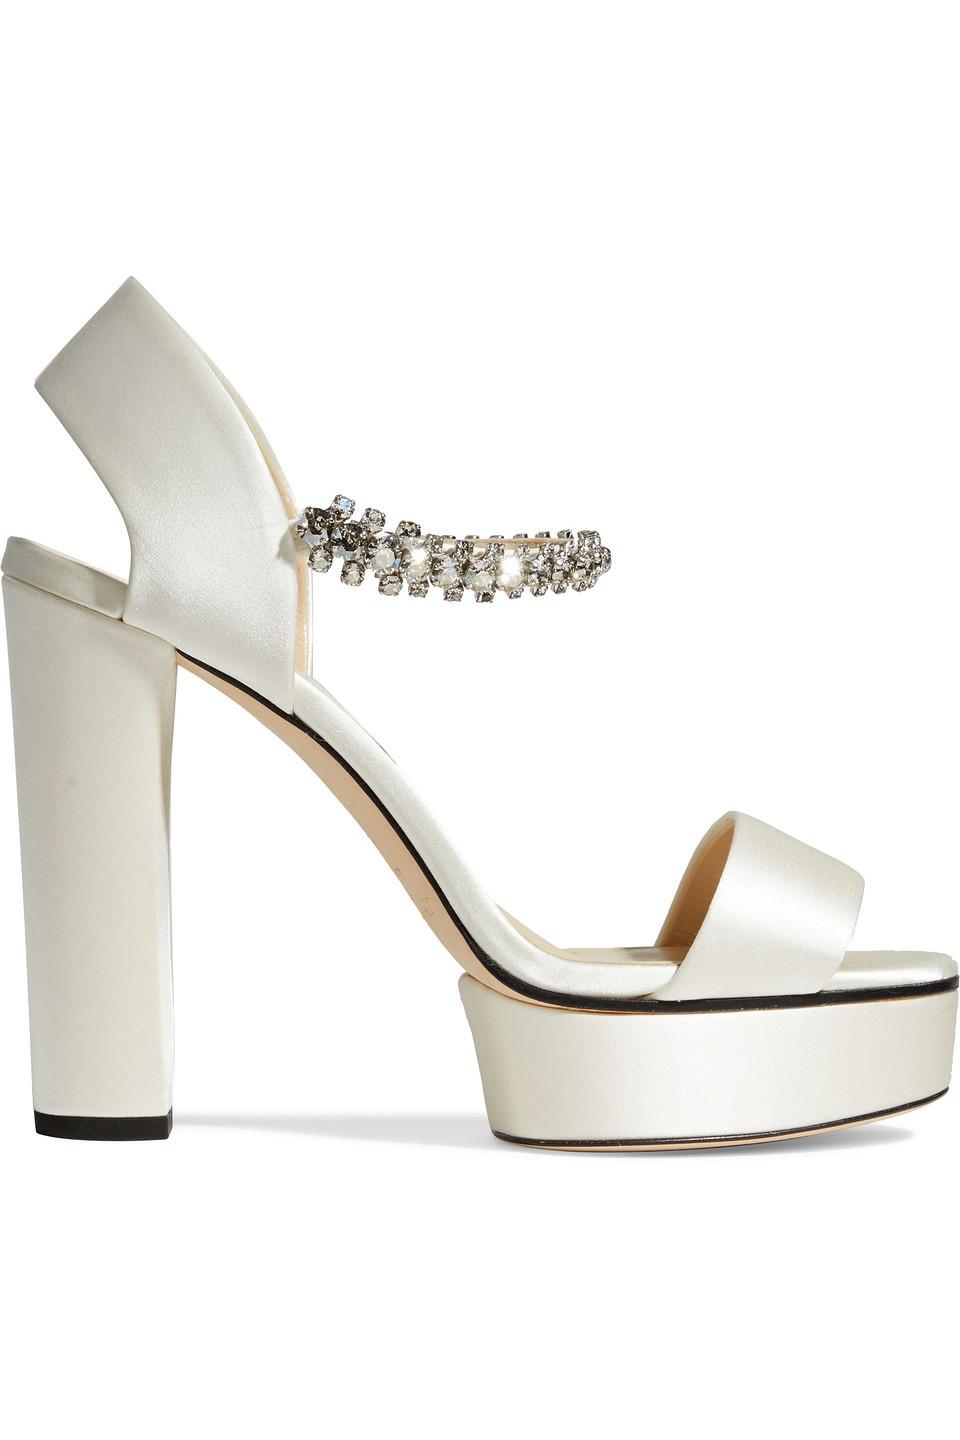 https://cdna.lystit.com/photos/theoutnet/ea4fb091/jimmy-choo-Ivory-Santina-125-Crystal-embellished-Satin-Platform-Sandals.jpeg